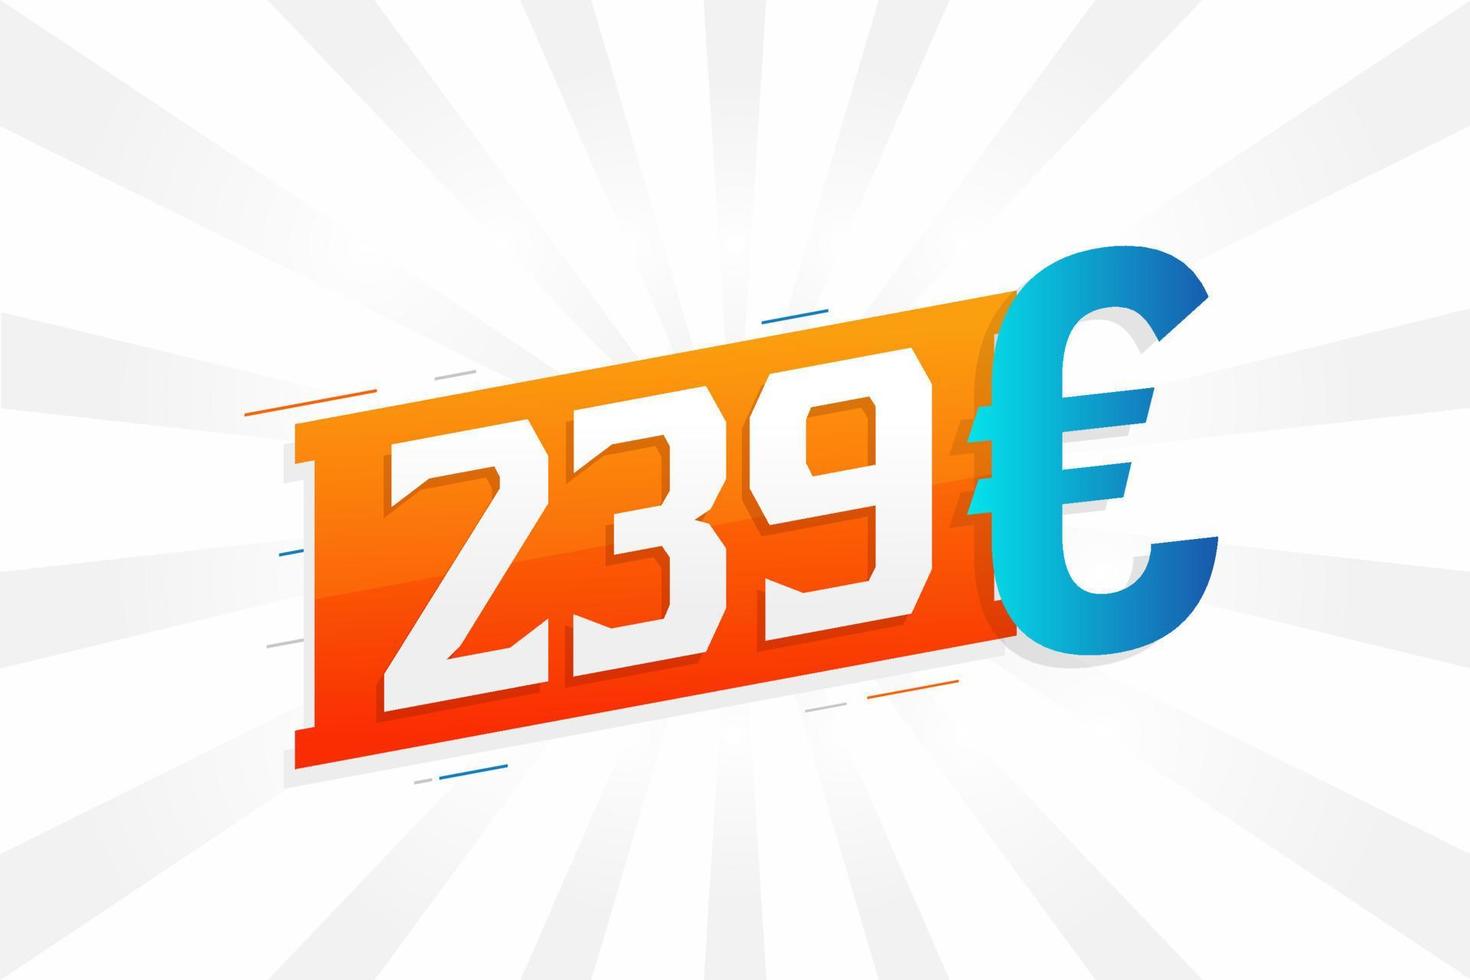 239 Euro Currency vector text symbol. 239 Euro European Union Money stock vector